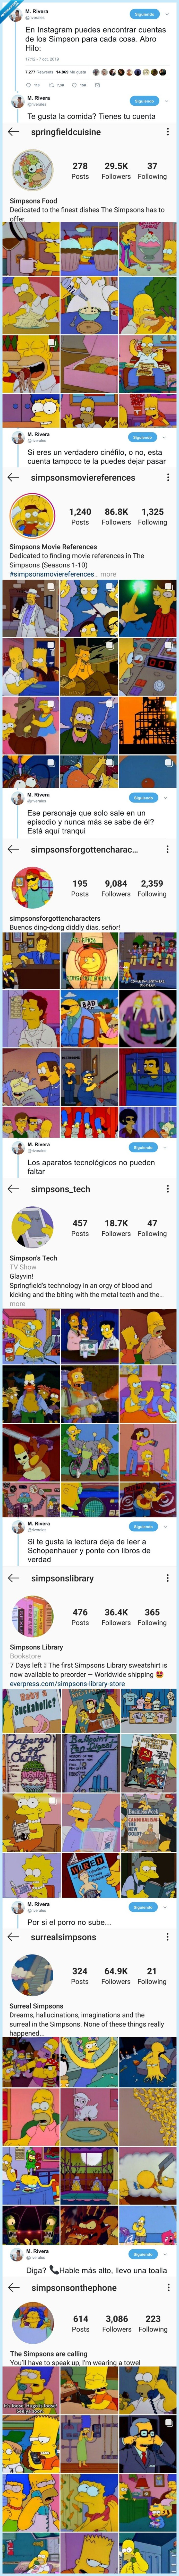 529103 - Existen cuentas de Instagram de los Simpsons para cualquier chorrada. Y nos flipan, vía @riverales